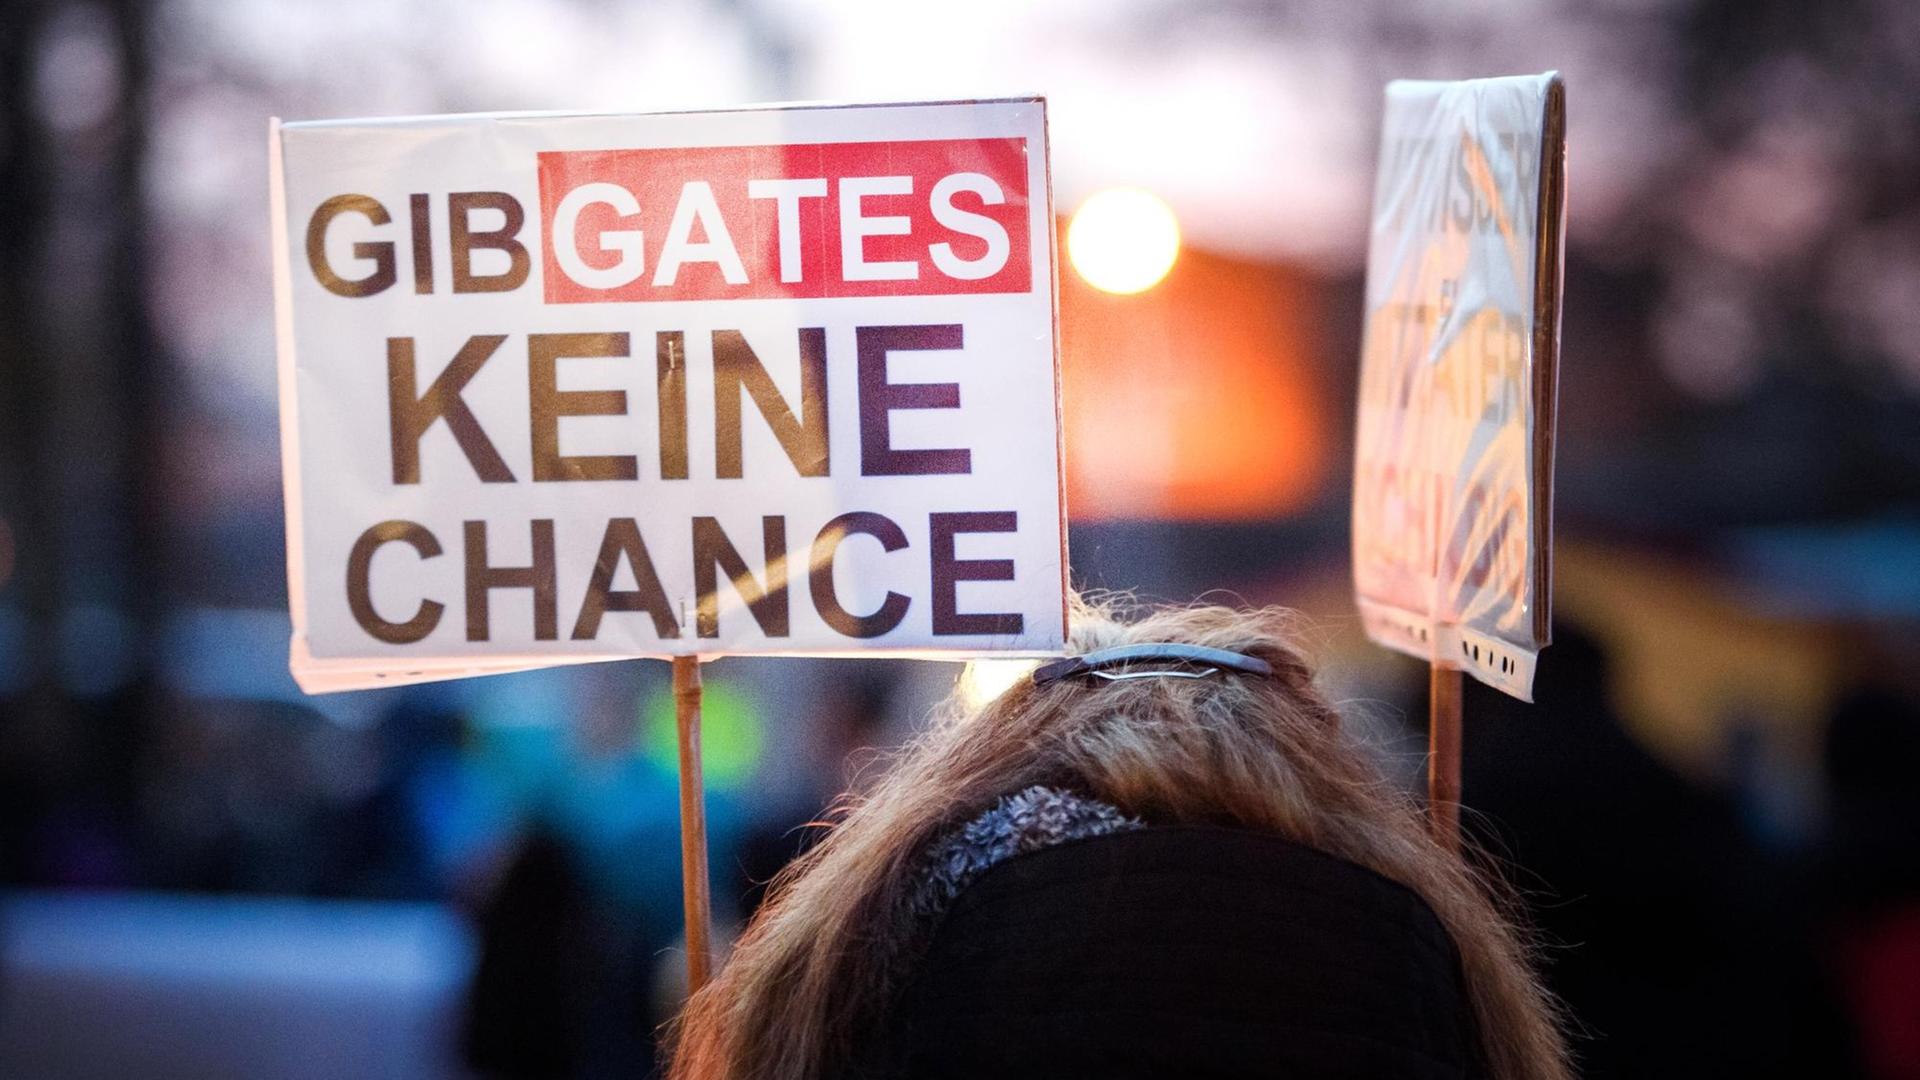 Gegner der Corona-Maßnahmen der Regierung stehen mit Schildern ("Gib Gates keine Chance") während einer Protestkundgebung auf dem Berta-Klingberg-Platz.